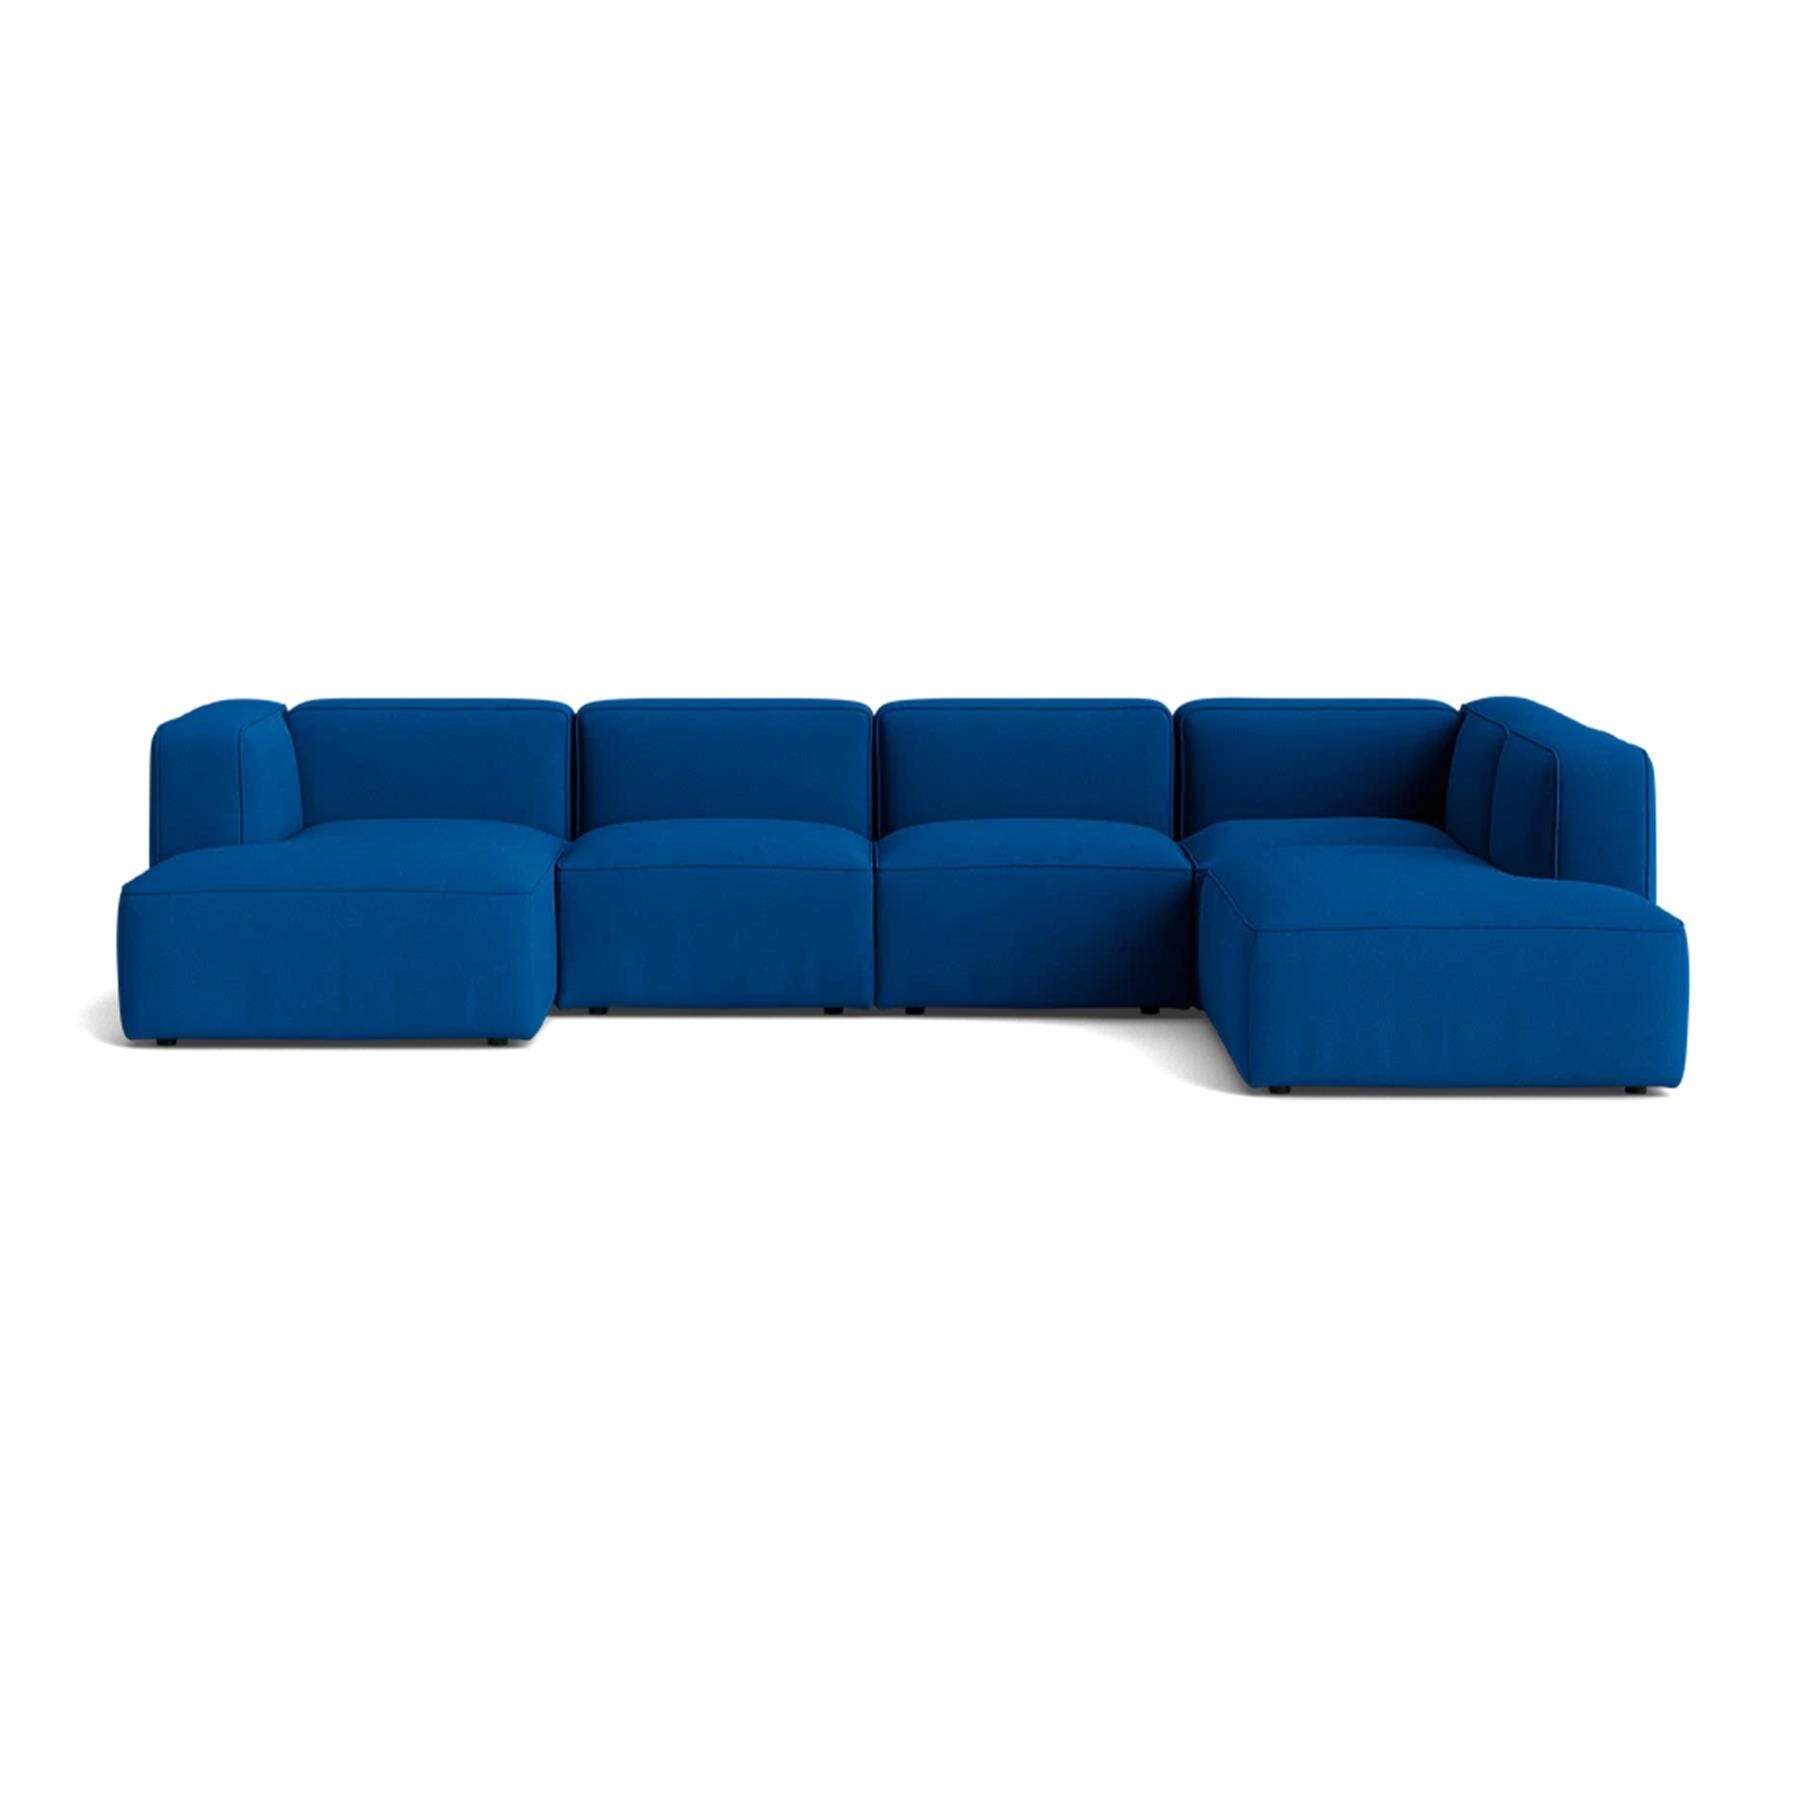 Make Nordic Basecamp Family Sofa Hallingdal 750 Left Blue Designer Furniture From Holloways Of Ludlow